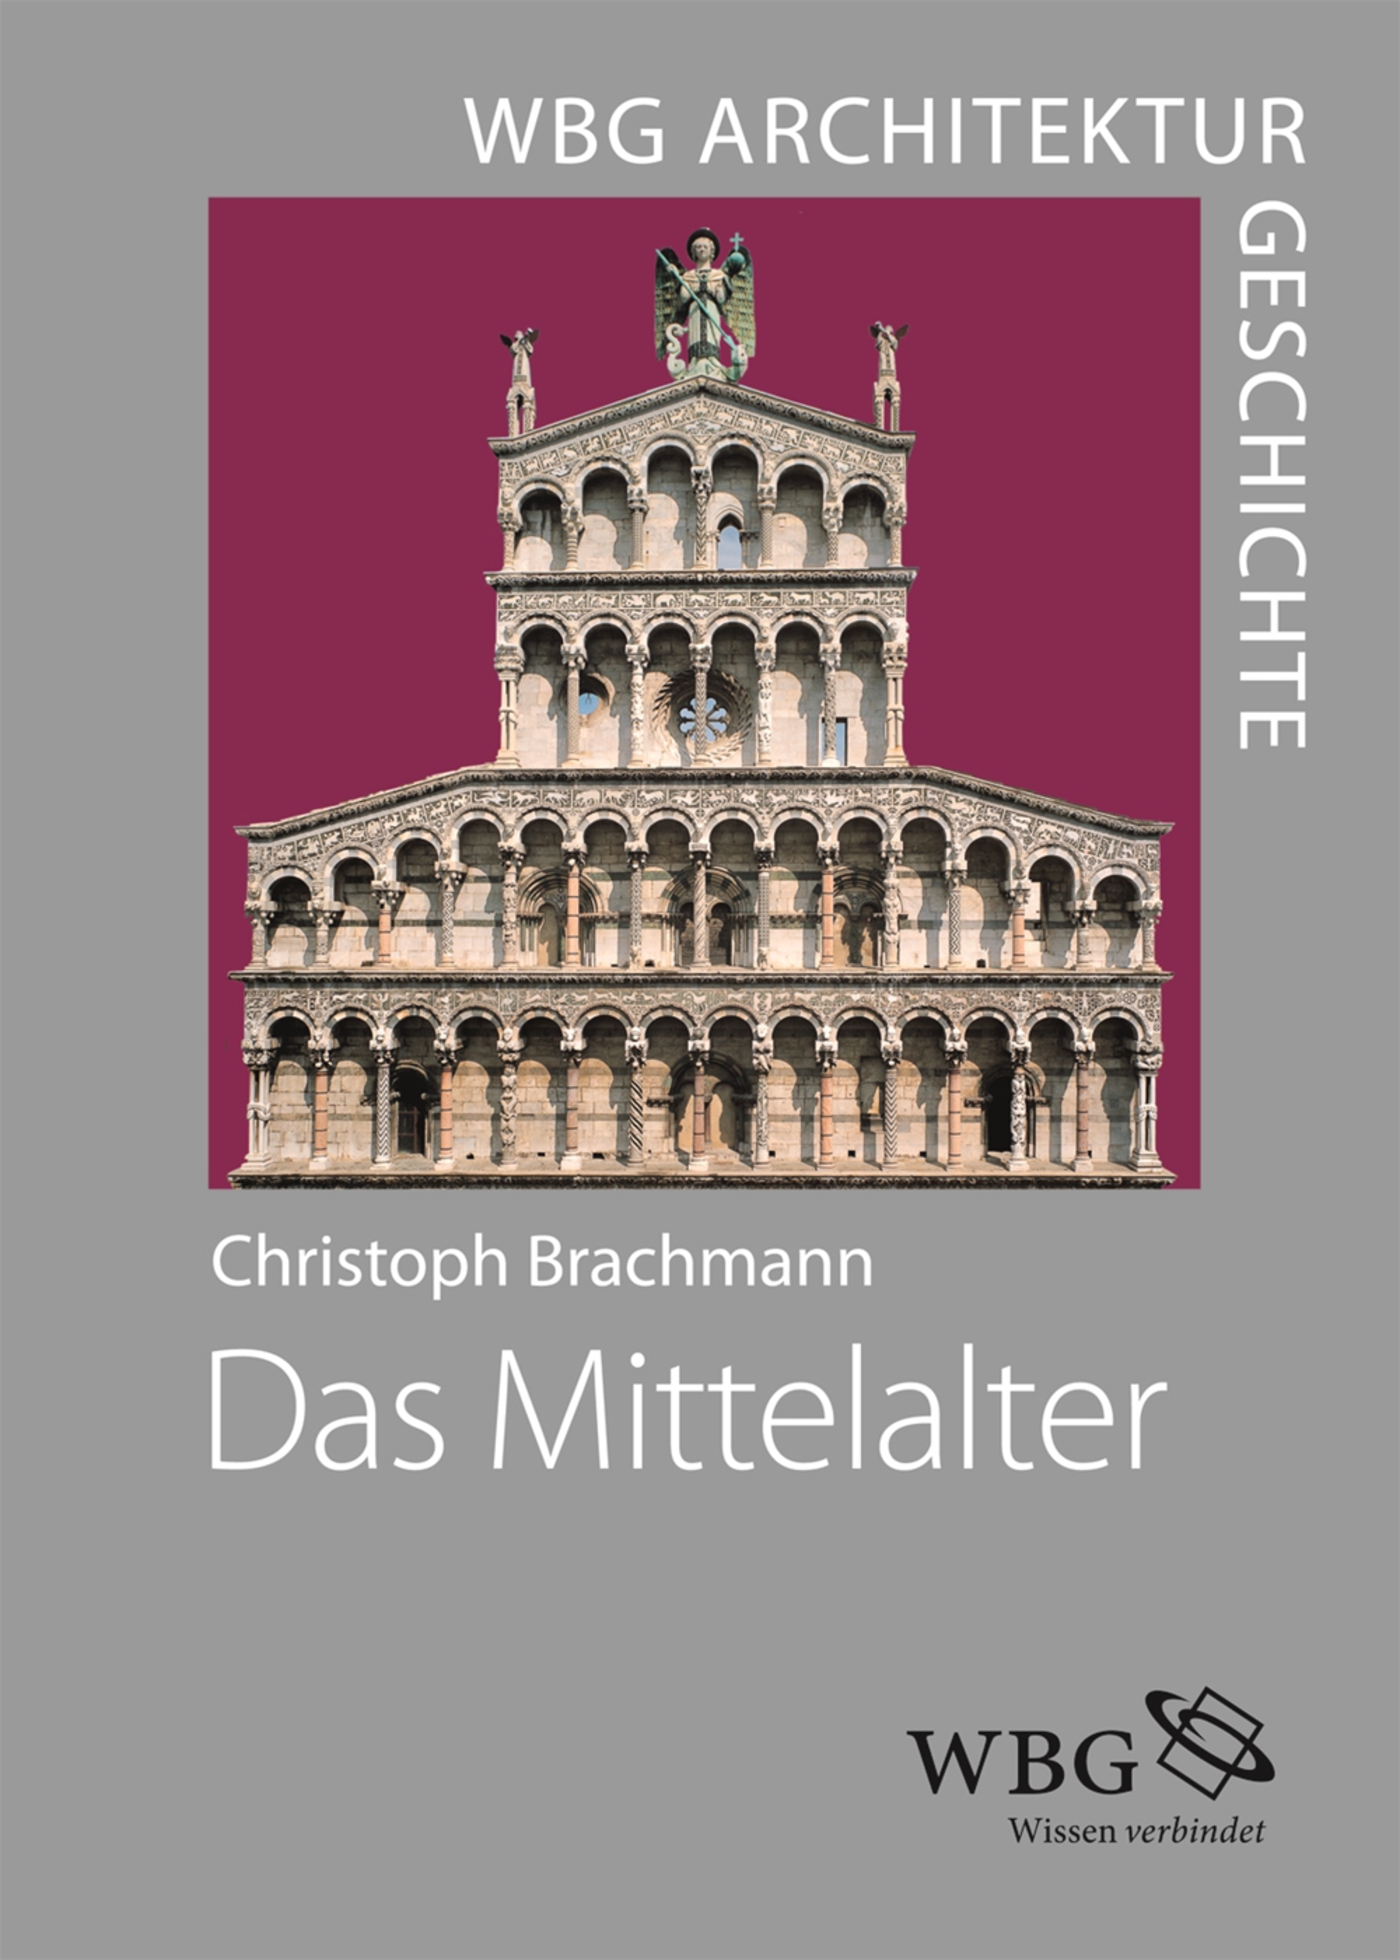 WBG Architekturgeschichte  Das Mittelalter (8001500)